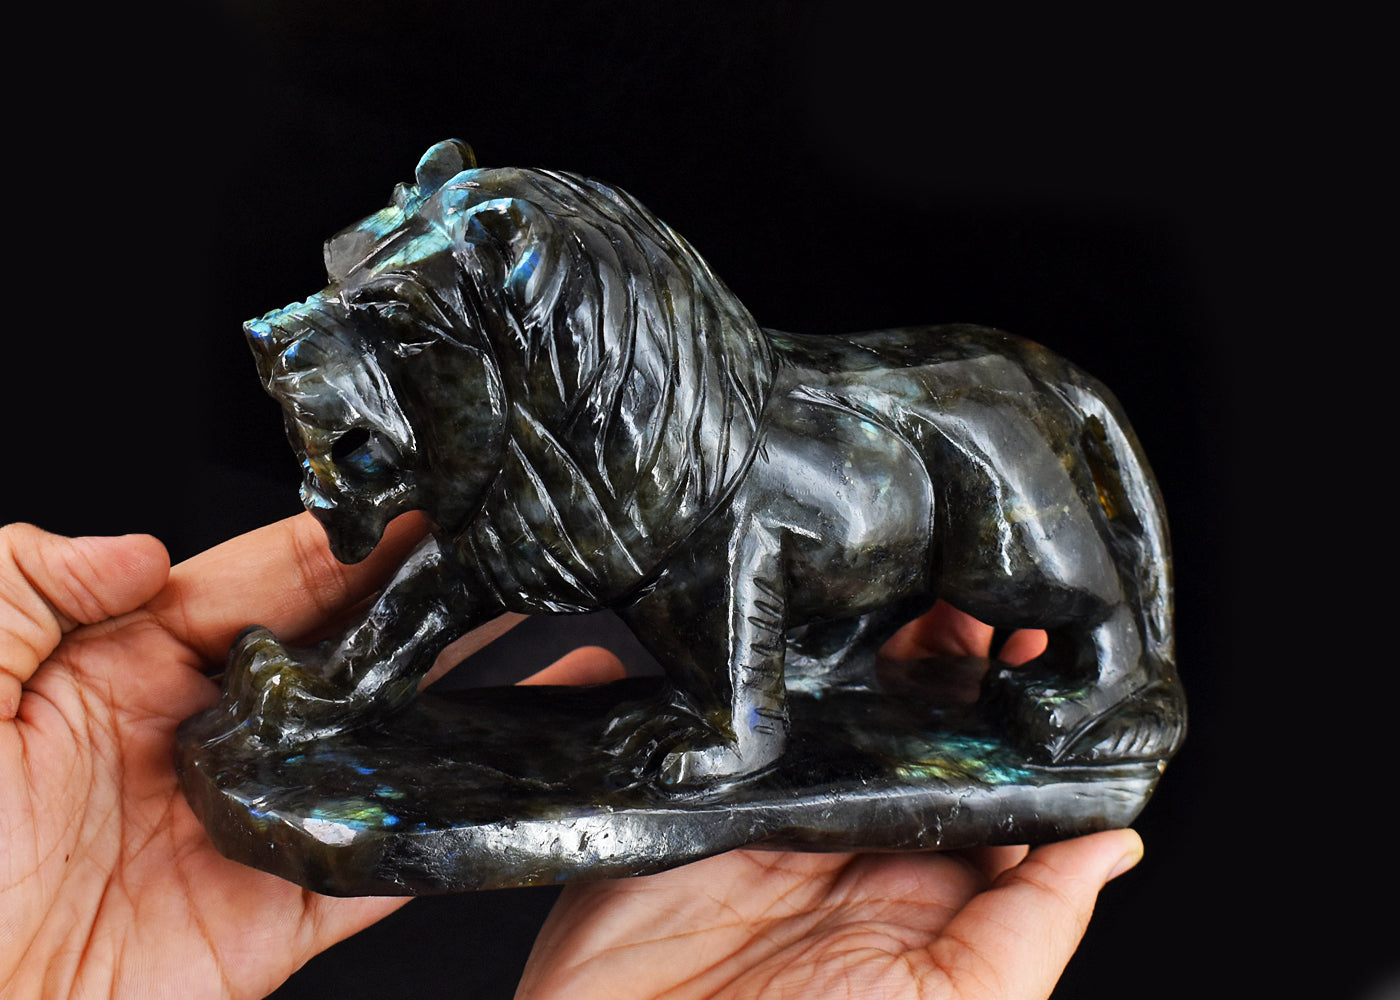 Craftsmen 6624.00 Cts Genuine Blue Flash Labradorite Hand Carved Crystal Gemstone Carving Lion